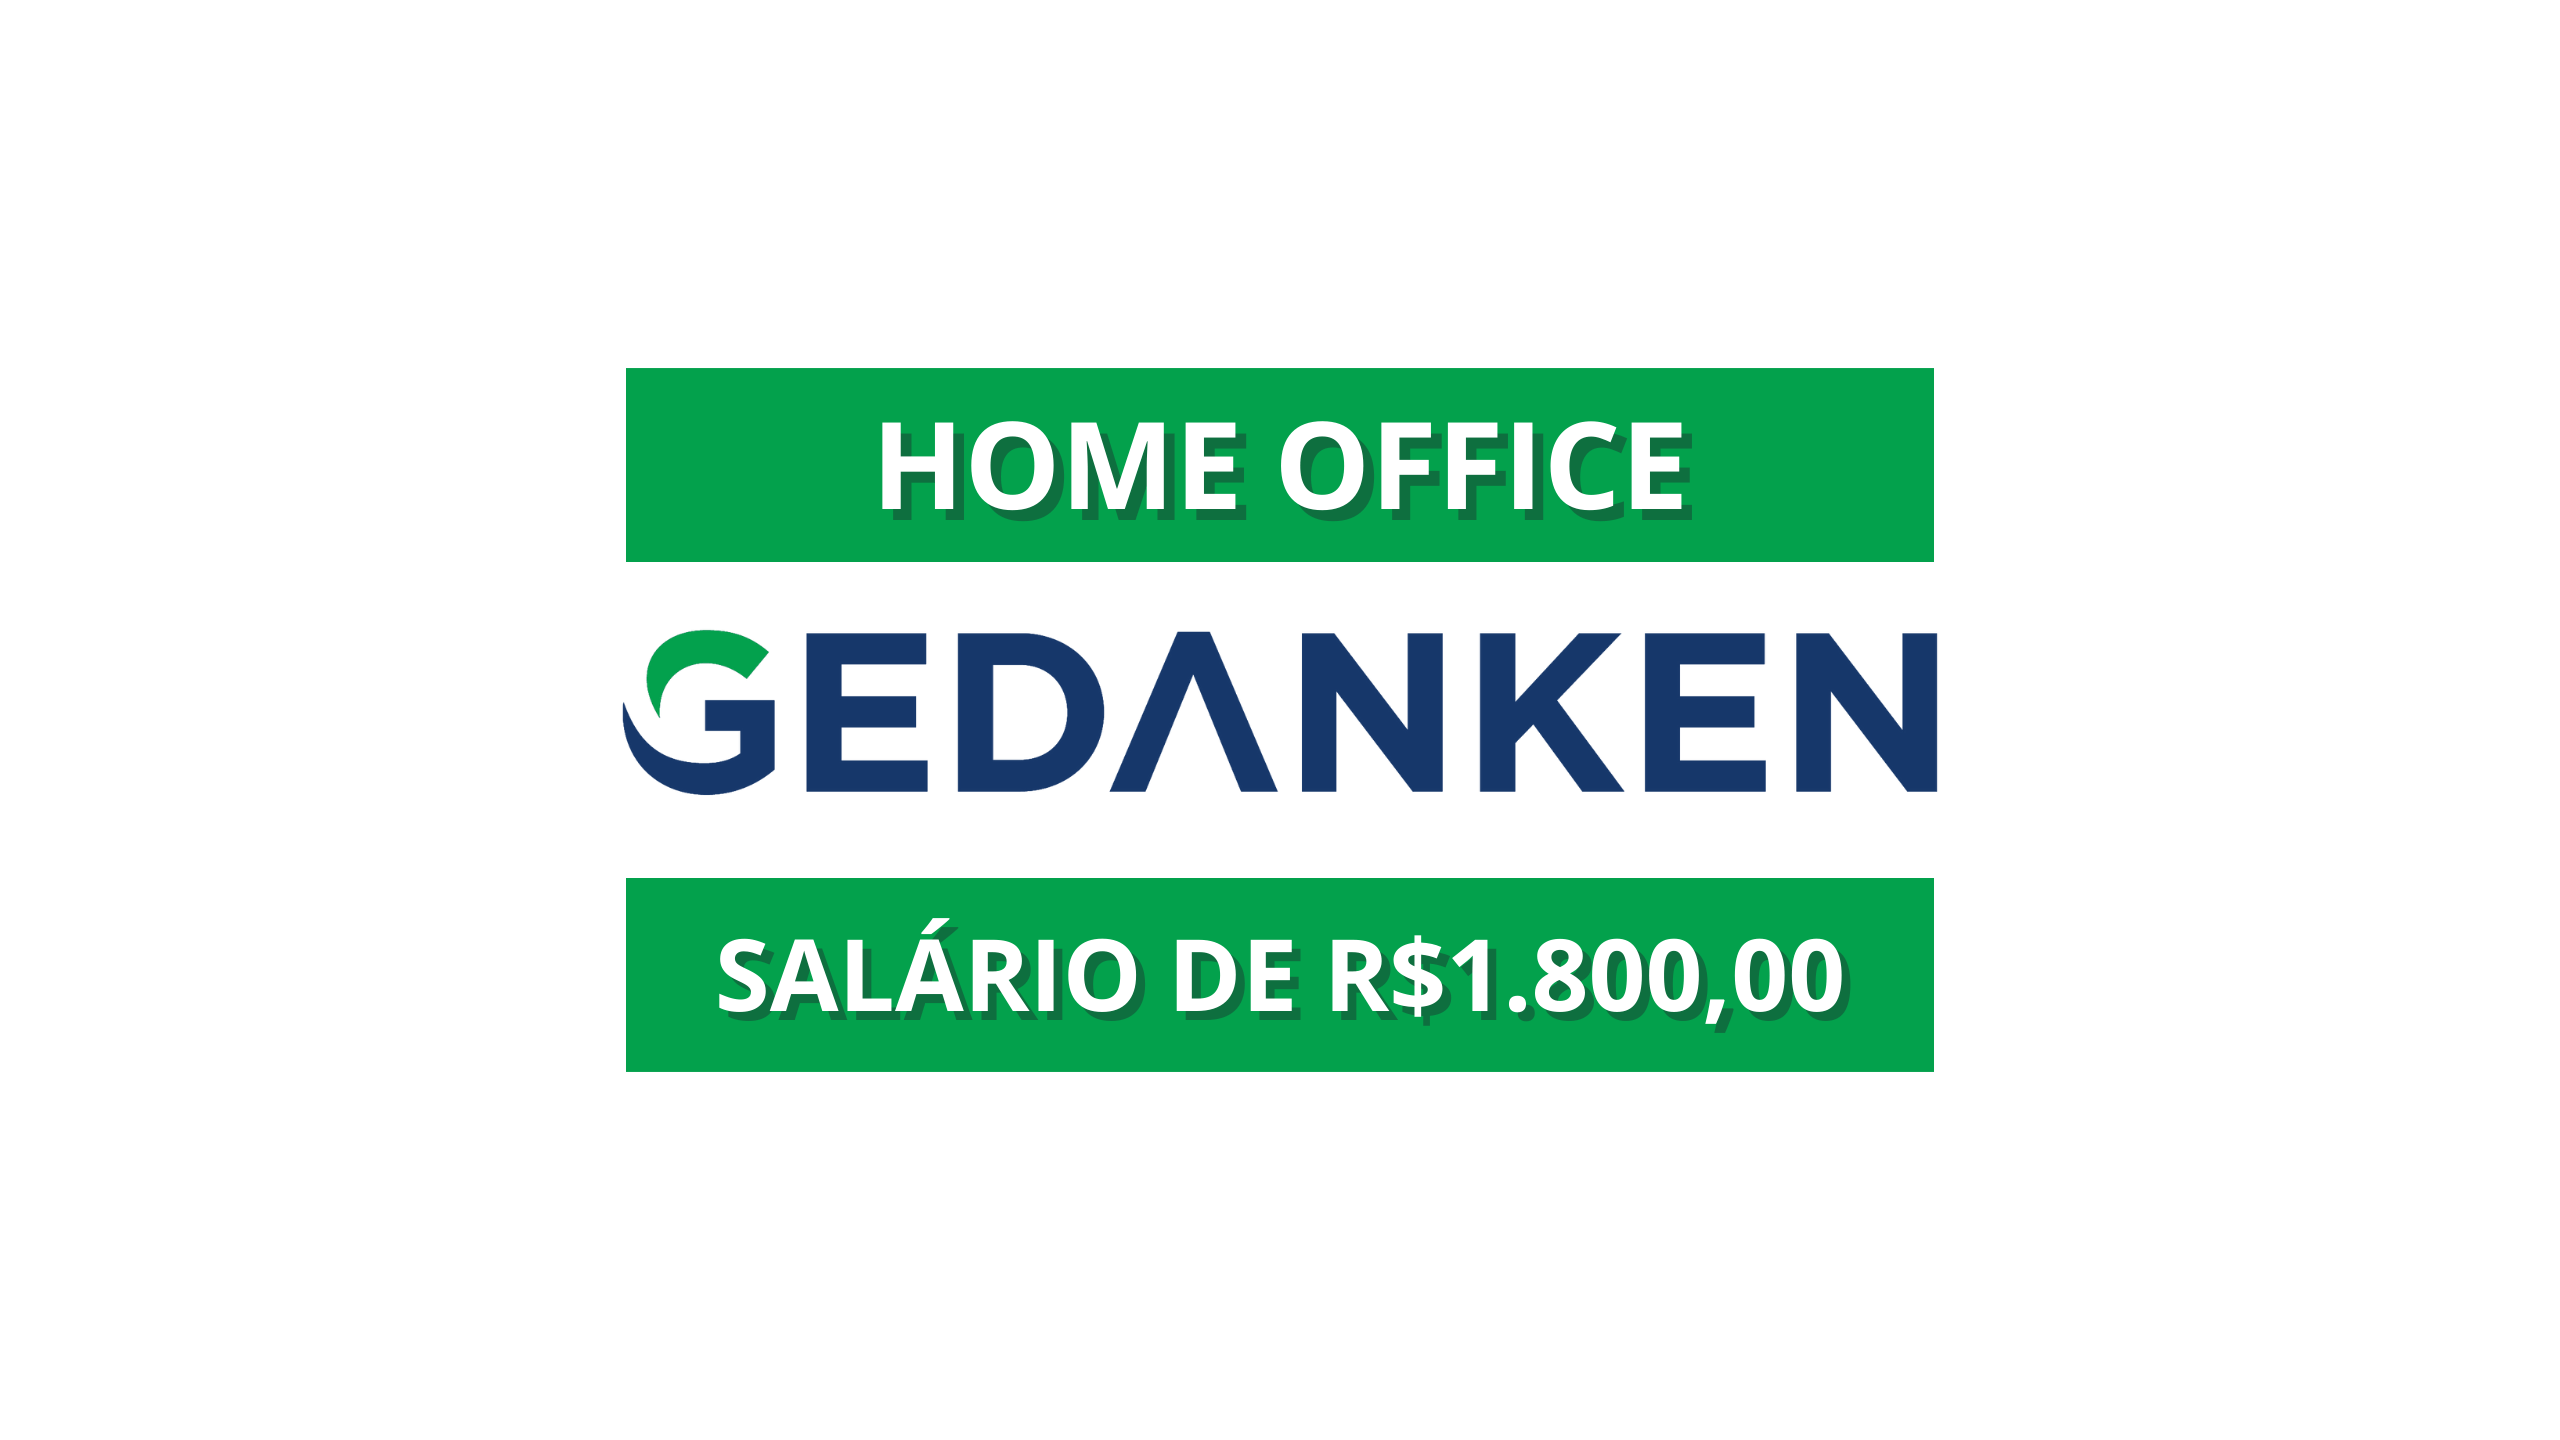 Startup Gedanken abre vaga HOME OFFICE para Analista de Documentação com salário de R$1.800,00